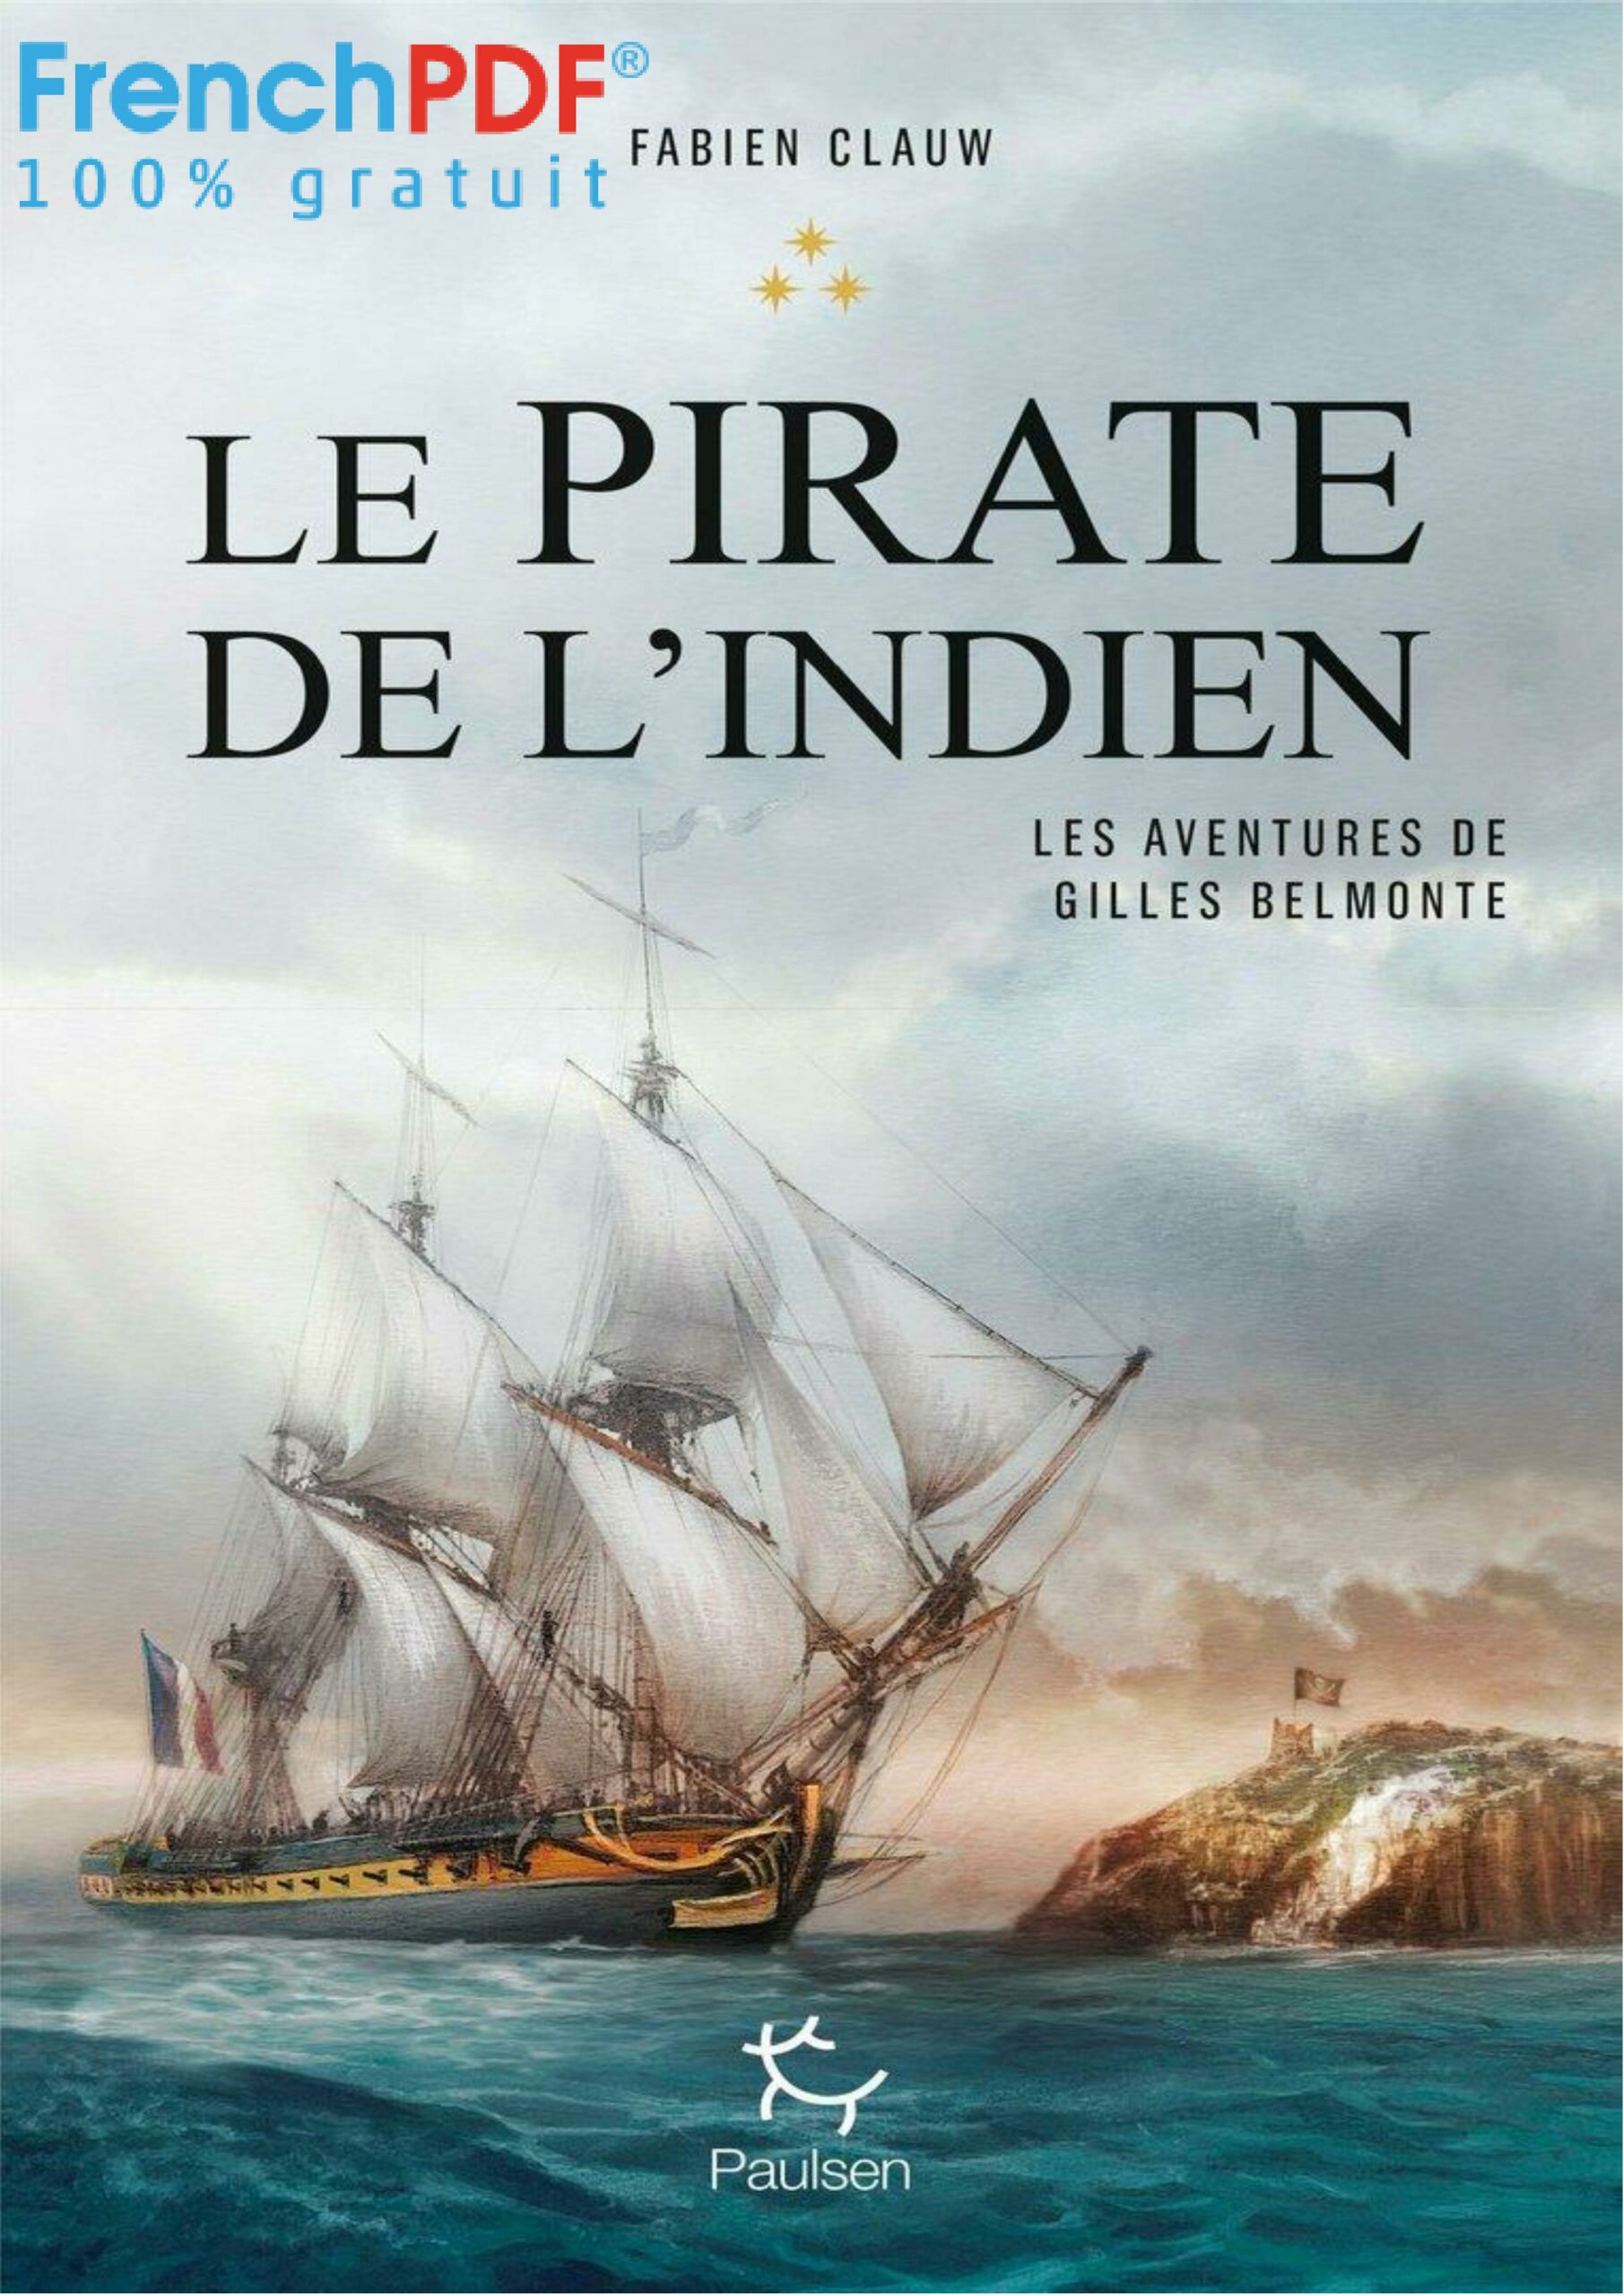 Le pirate de l'Indien - Fabien Clauw - FrenchPDF.com